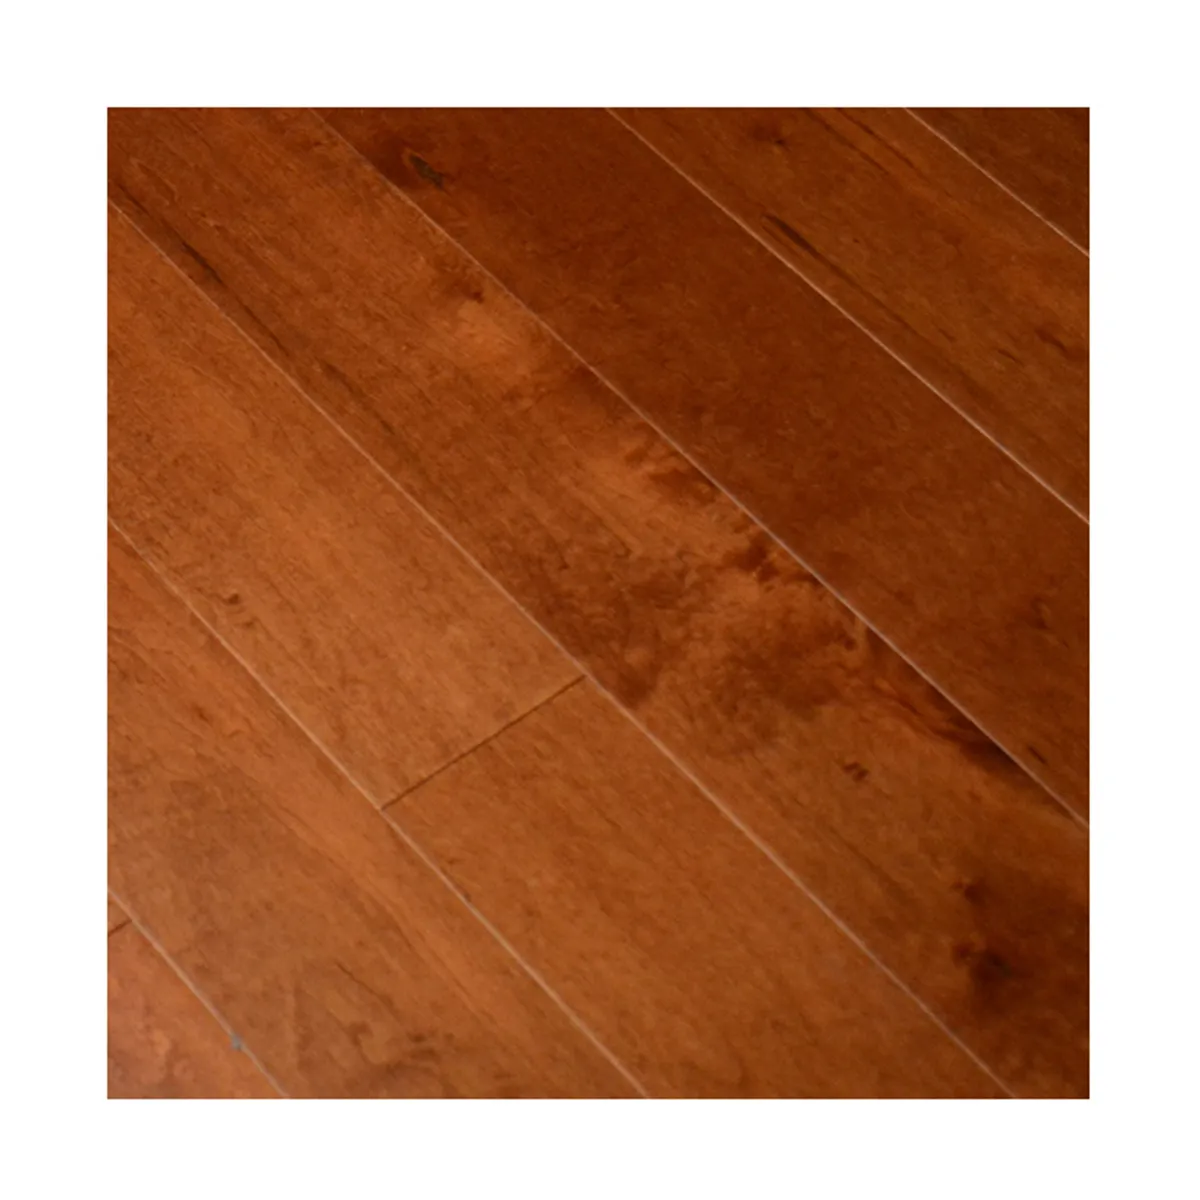 Pretty Colorful wood floor kitchen 12*120*300-1200 MM herringbone HDF engineered wood flooring